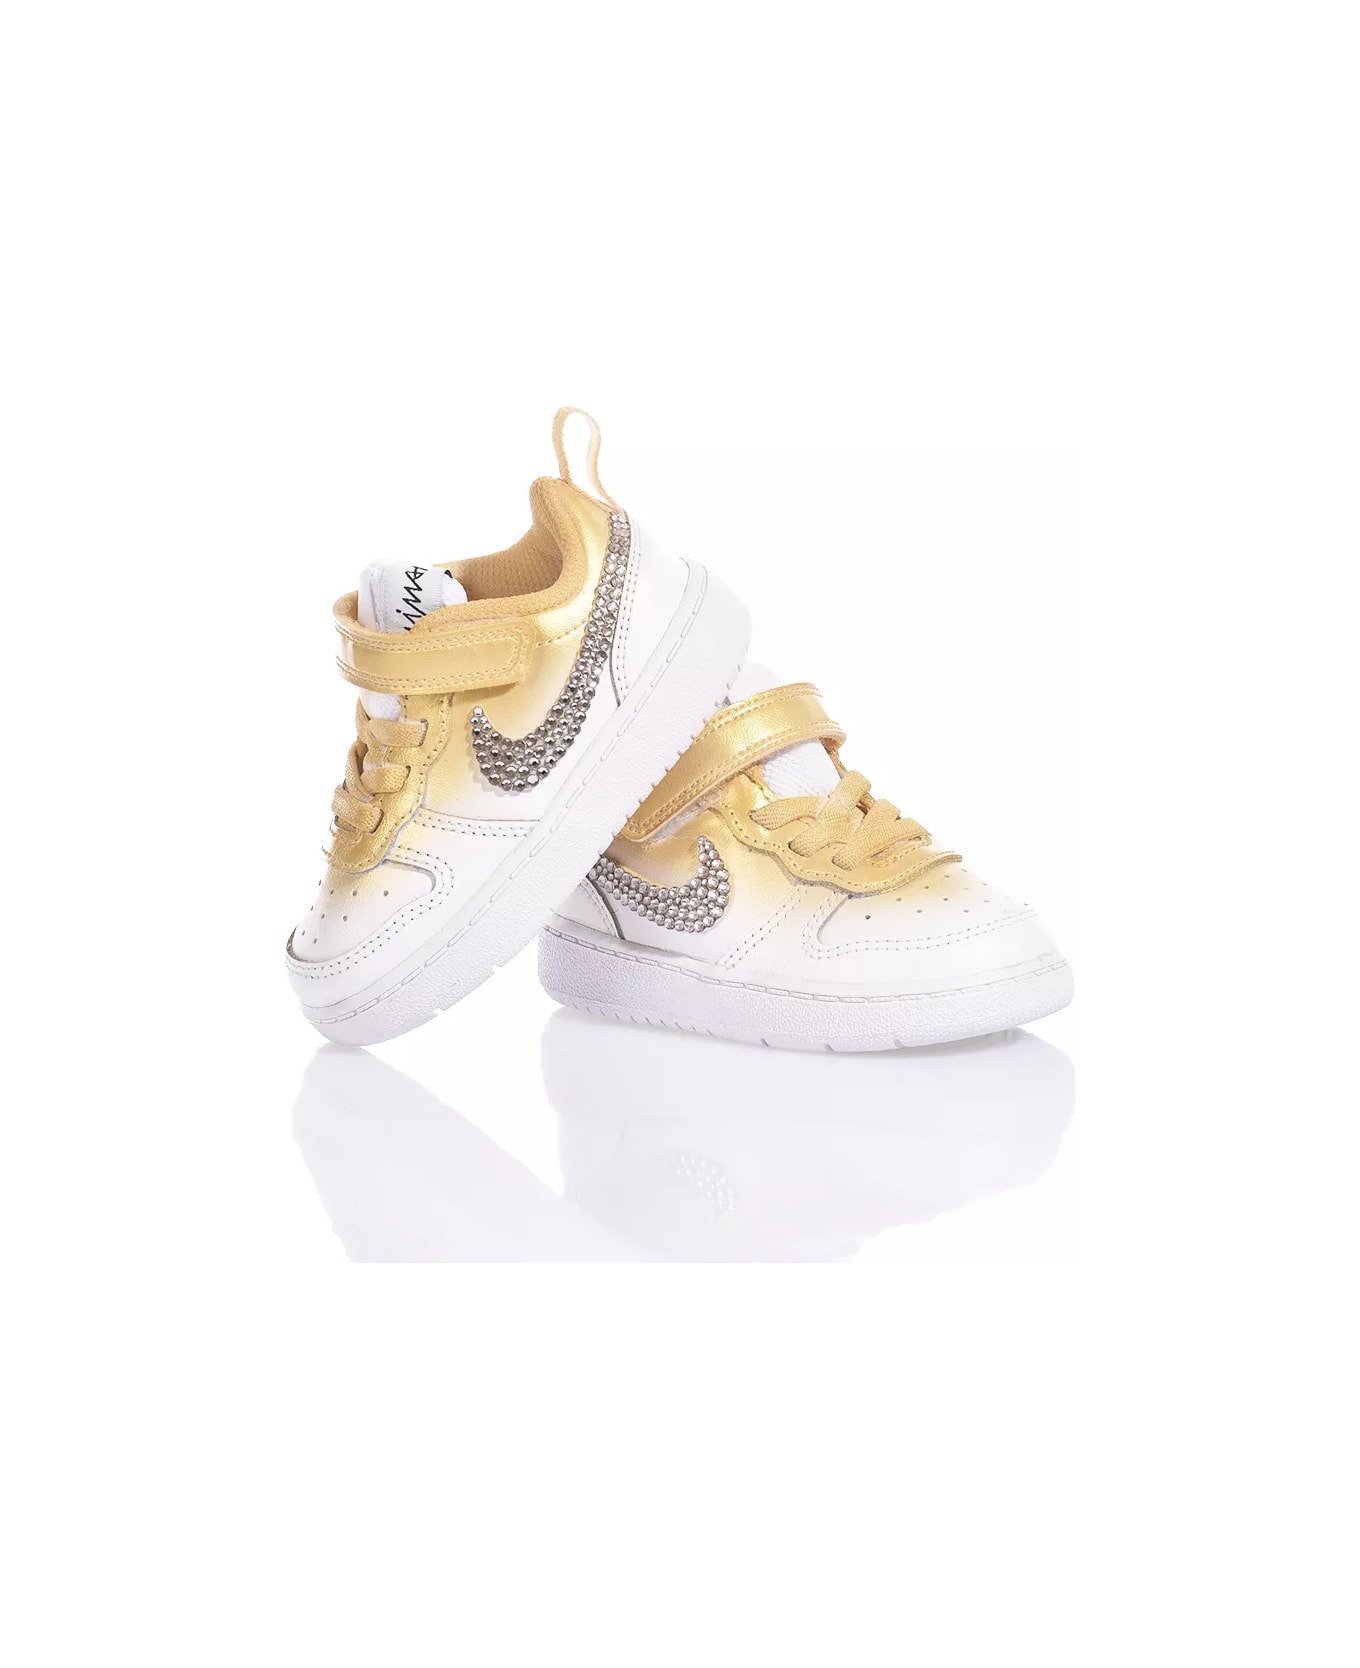 Mimanera Nike Baby Shade Gold Custom シューズ